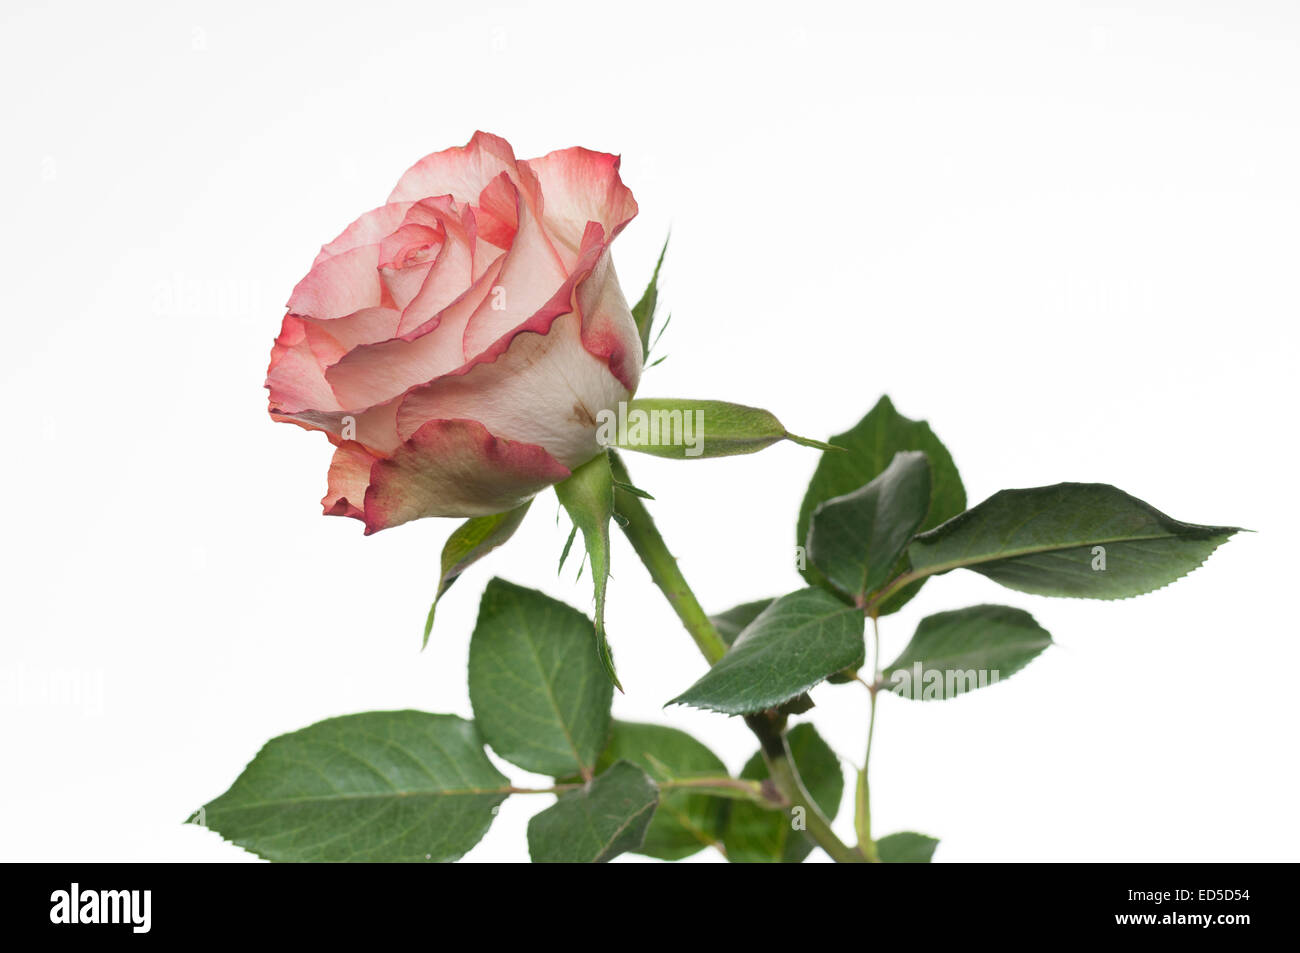 Einzelne weiße rose mit rosa Rand / border / Edge und grüne Blätter auf  weißem Hintergrund Stockfotografie - Alamy